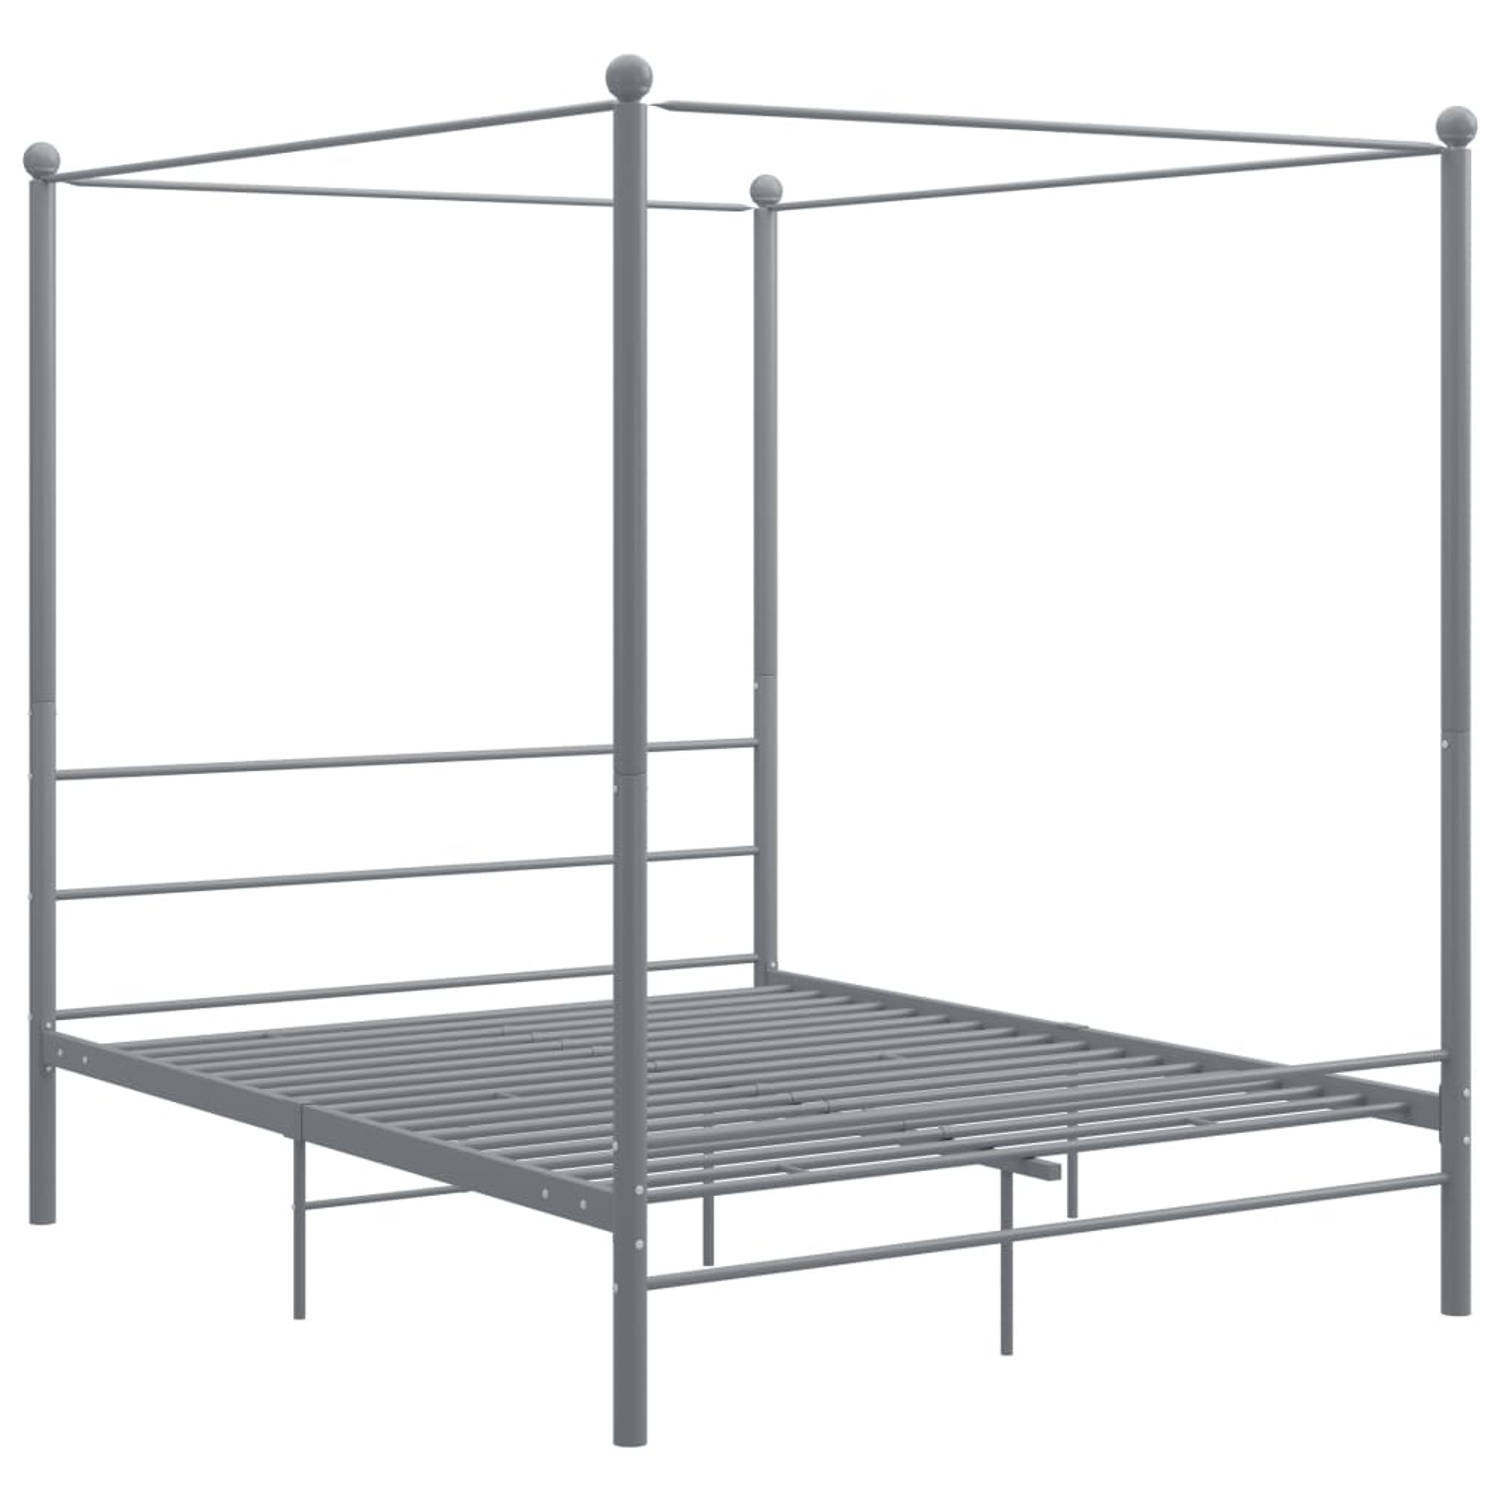 The Living Store Hemelbedframe metaal grijs 160x200 cm - Bedframe - Bedframe - Bed Frame - Bed Frames - Bed - Bedden - Metalen Bedframe - Metalen Bedframes - 2-persoonsbed - 2